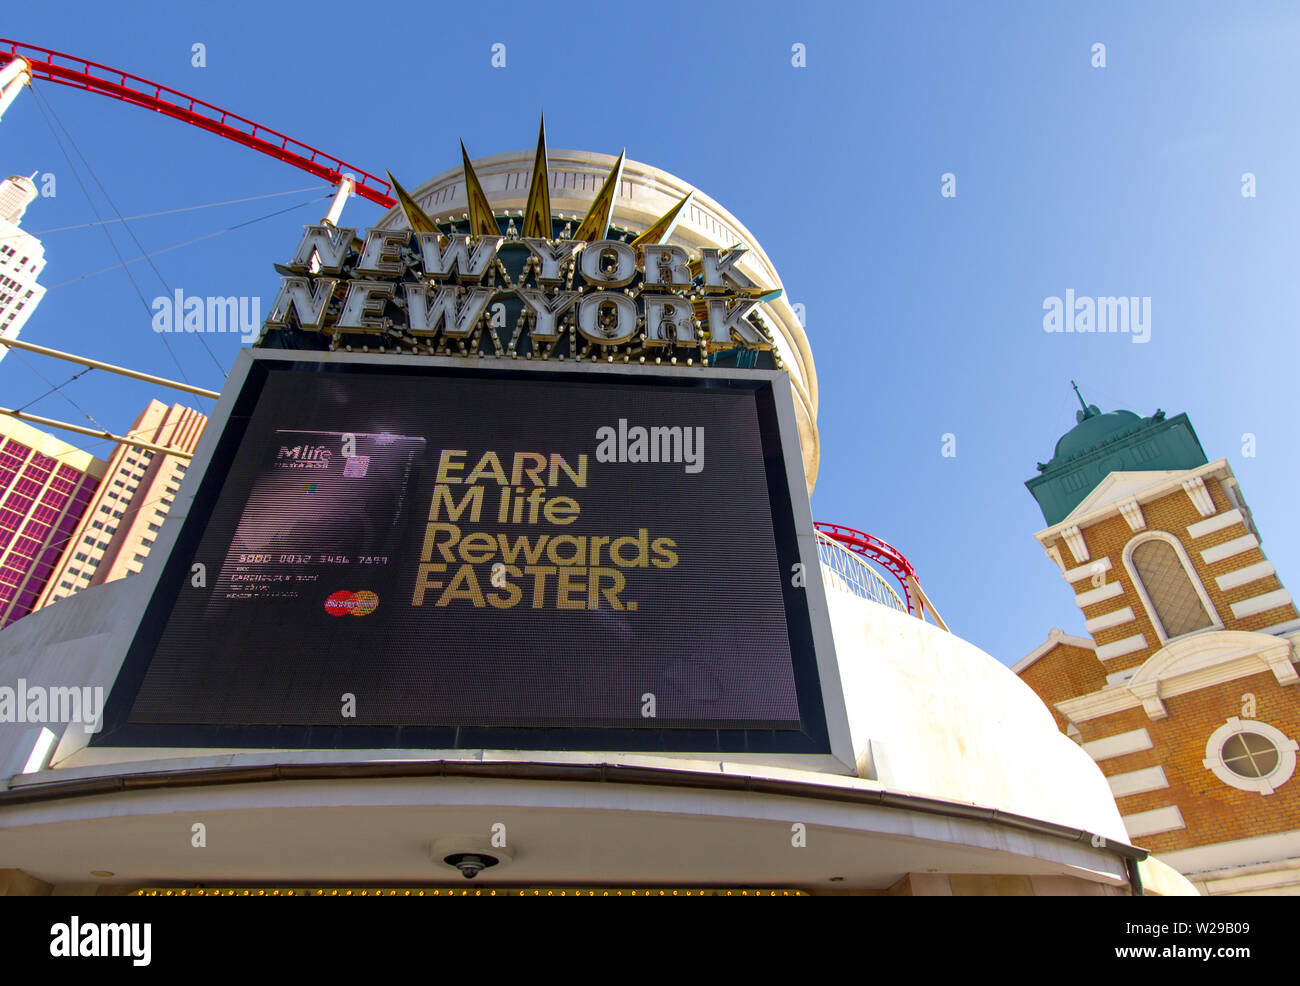 Las Vegas, Nevada, USA - Mai 6, 2019: Äußere des New York New York casino and Resort mit einem Festzelt Werbung M Life Rewards Programm. Stockfoto